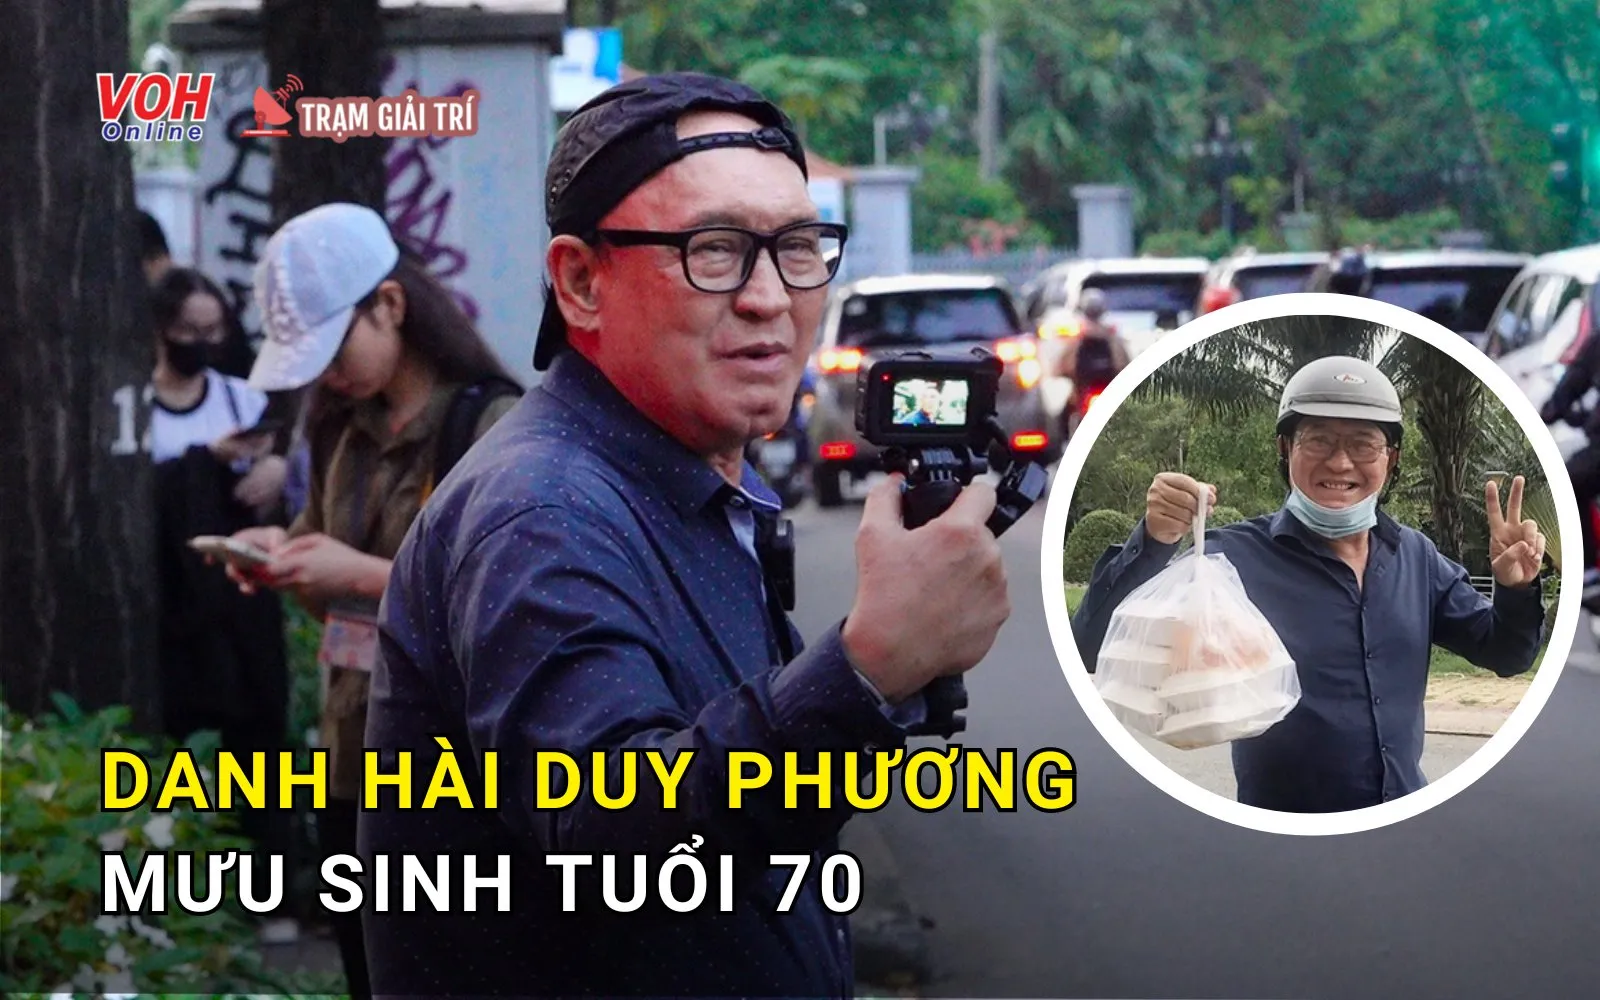 Cuộc sống tuổi 70 của danh hài Duy Phương: bán bánh bèo, làm Youtube